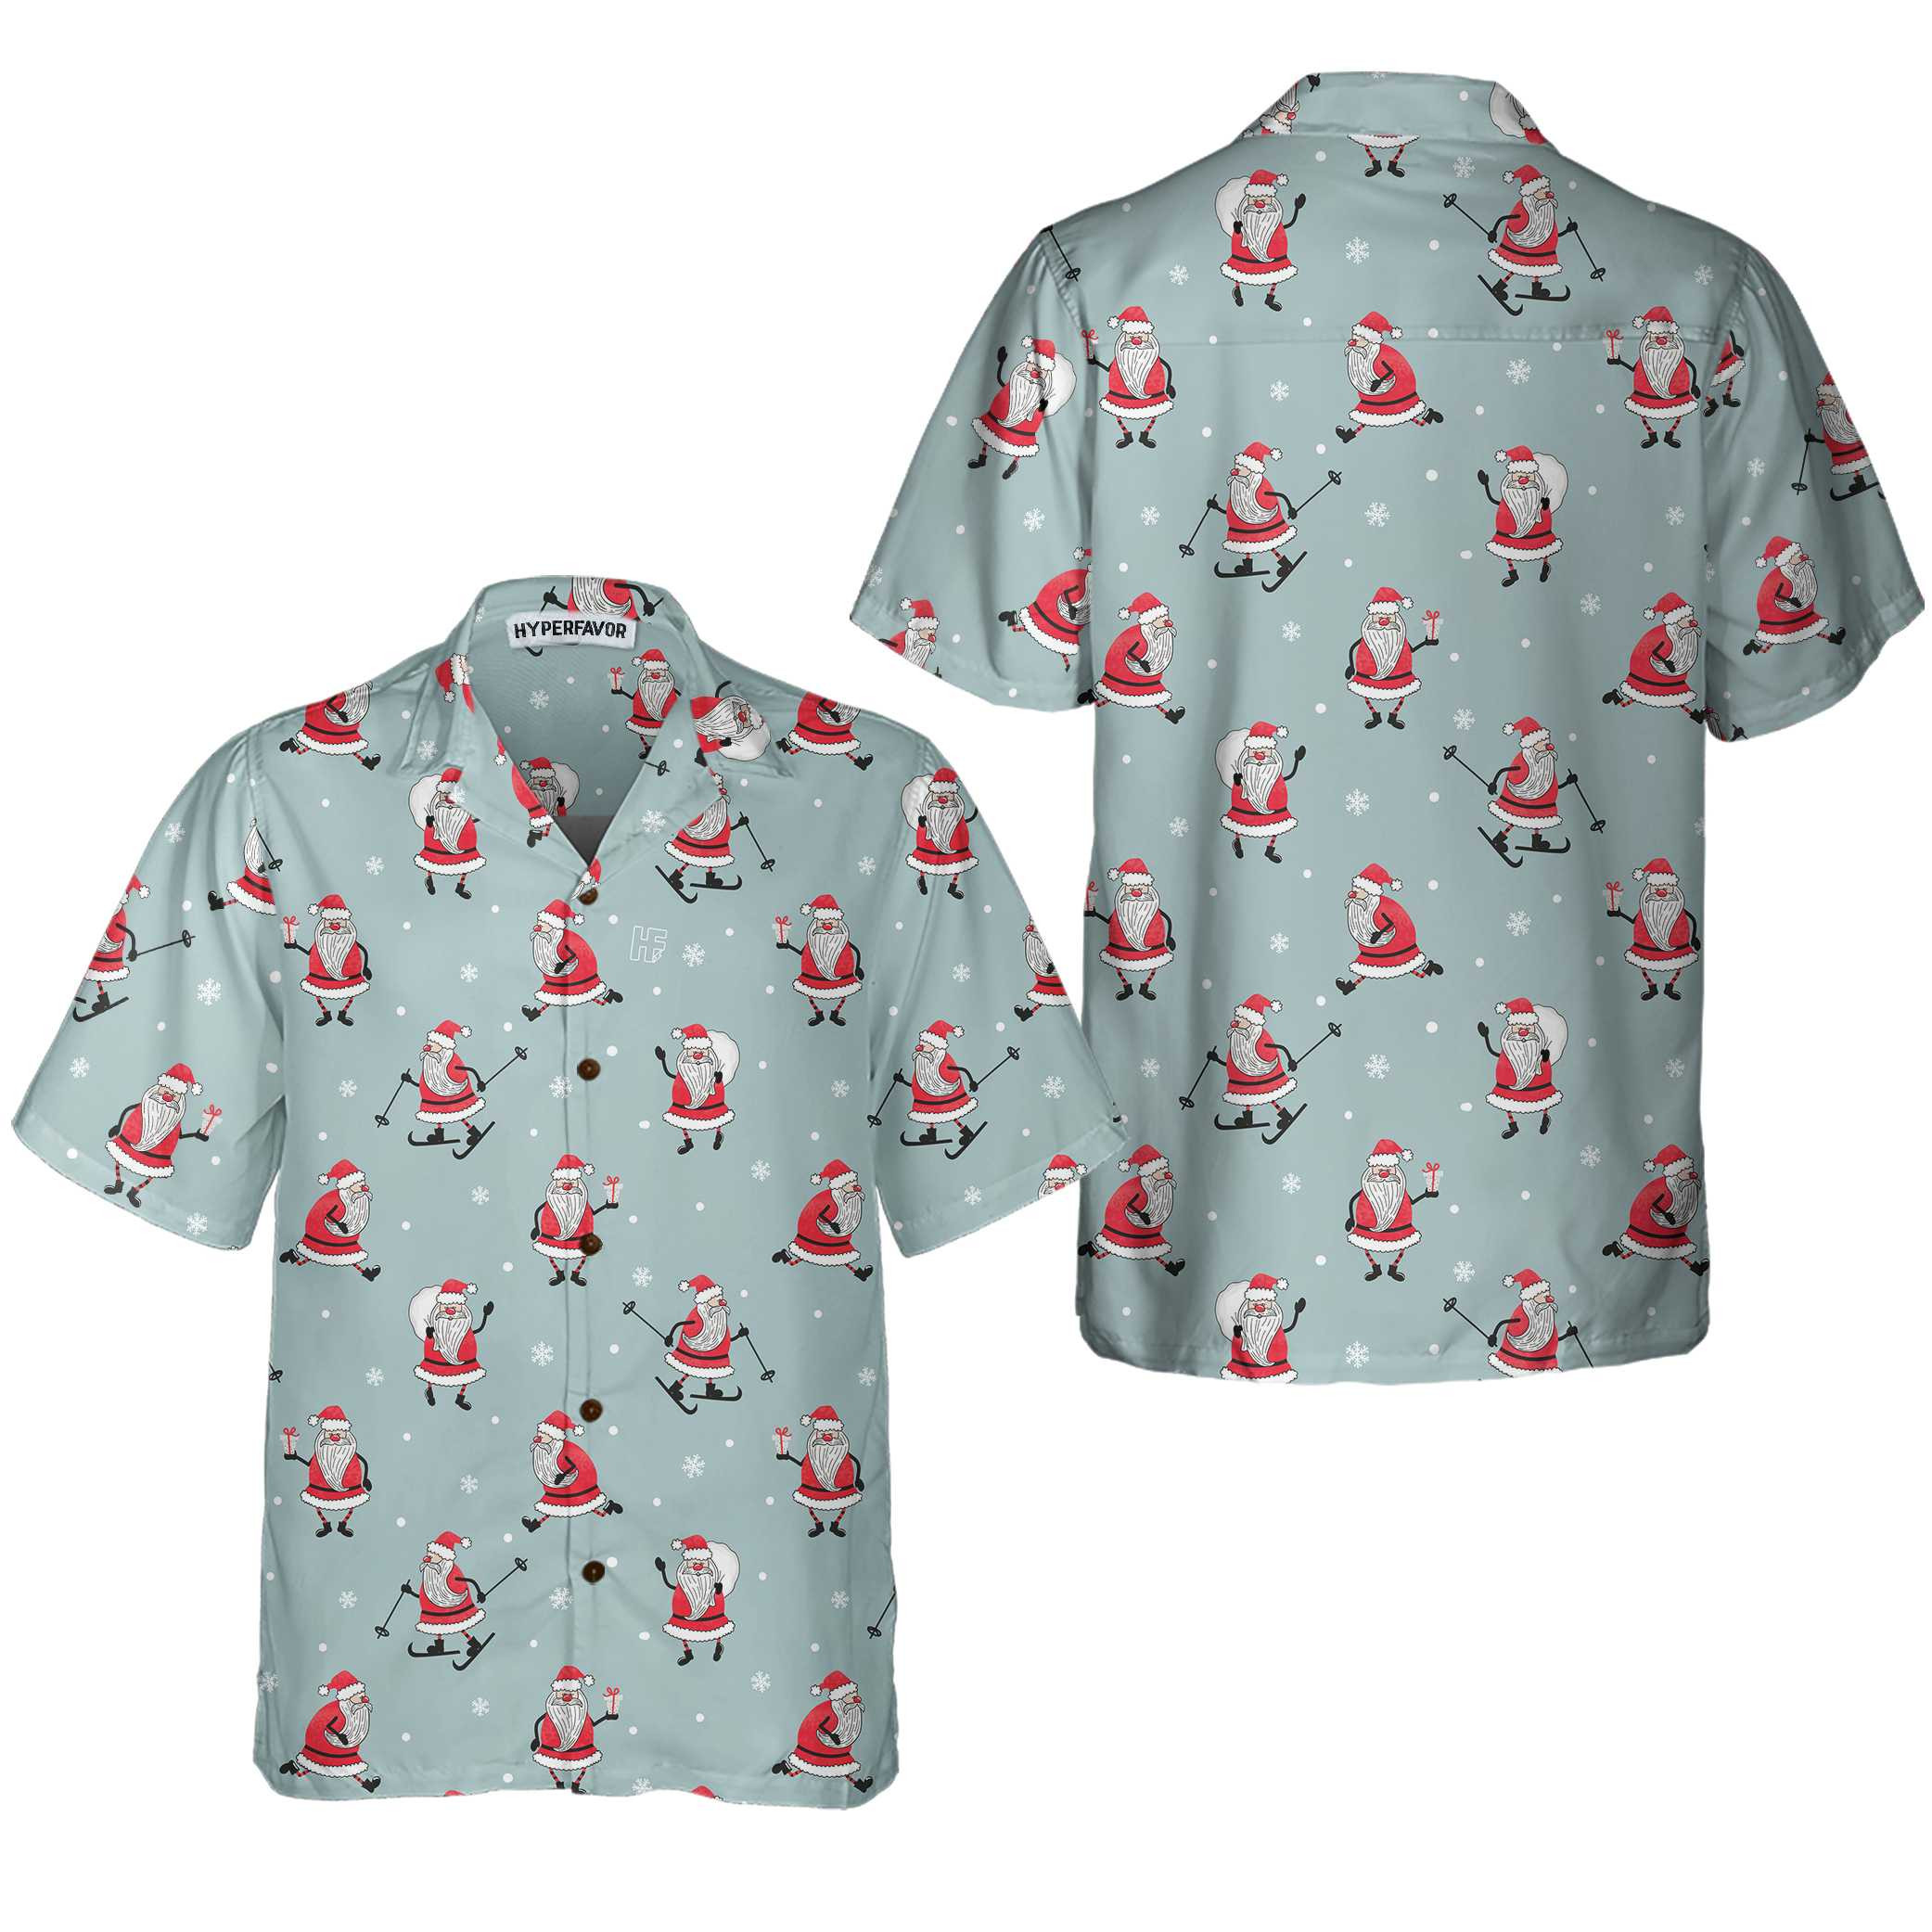 Funny Santa Claus Christmas Shirt For Men, Santa Claus Hawaiian Shirt